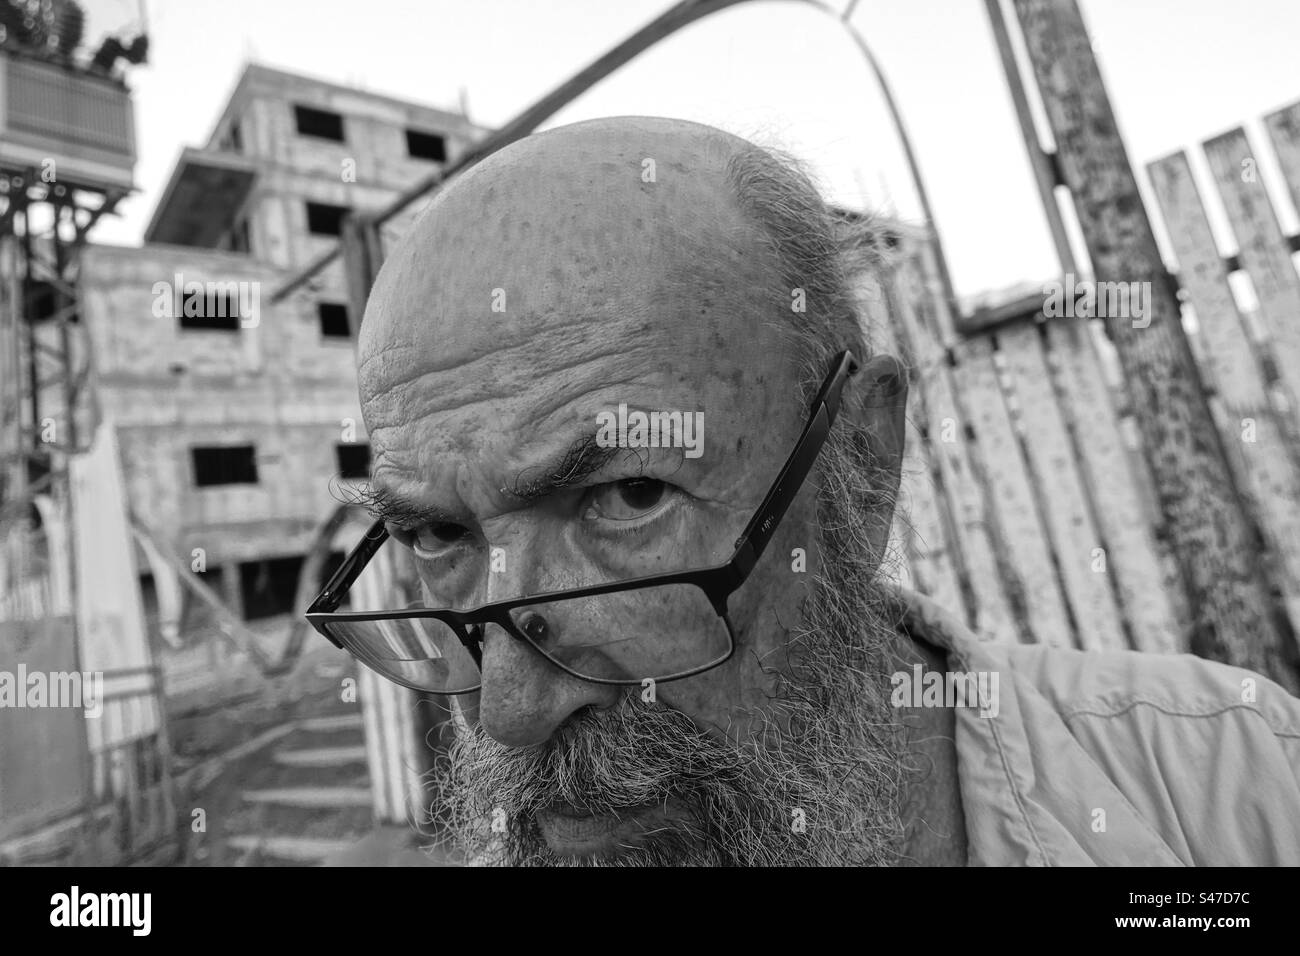 Suspicious senior man against building in bad condition Stock Photo